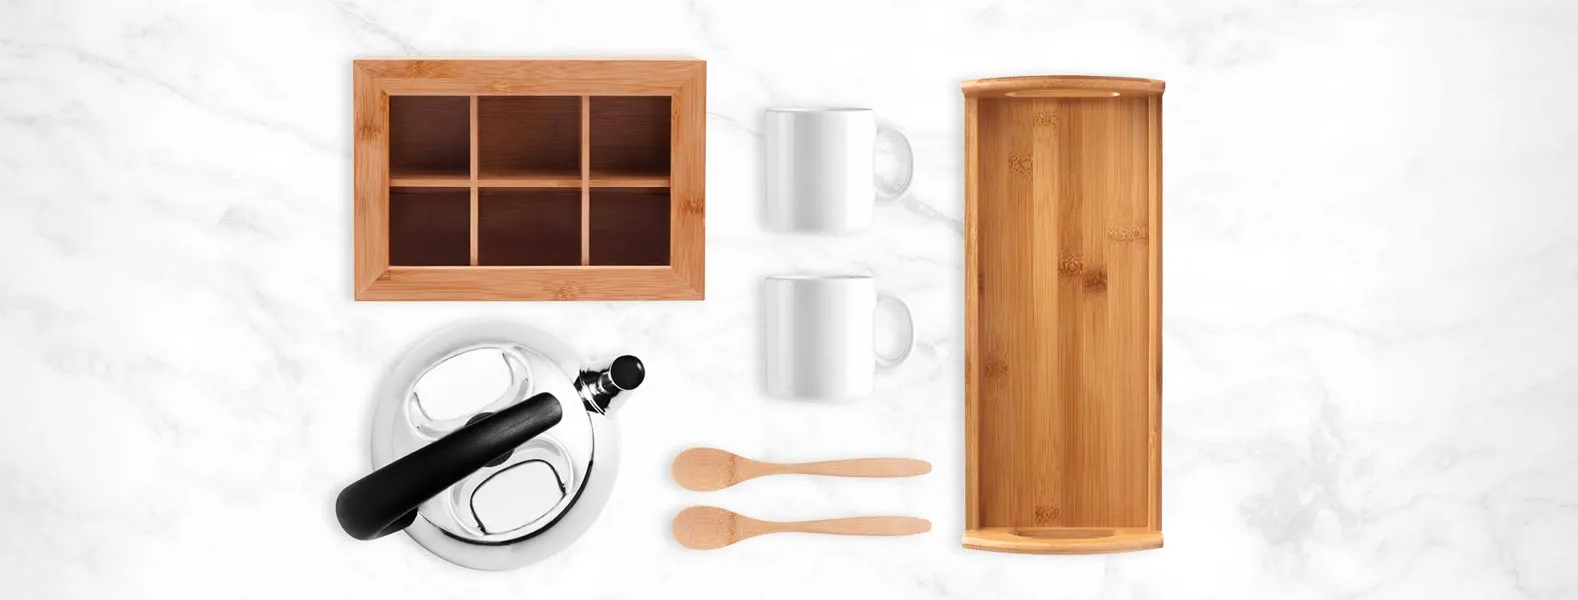 Kit para chá. Acompanha bandeja, caixa para chás e 2 colheres em bambu; 2 canecas em porcelana e chaleira em Inox.